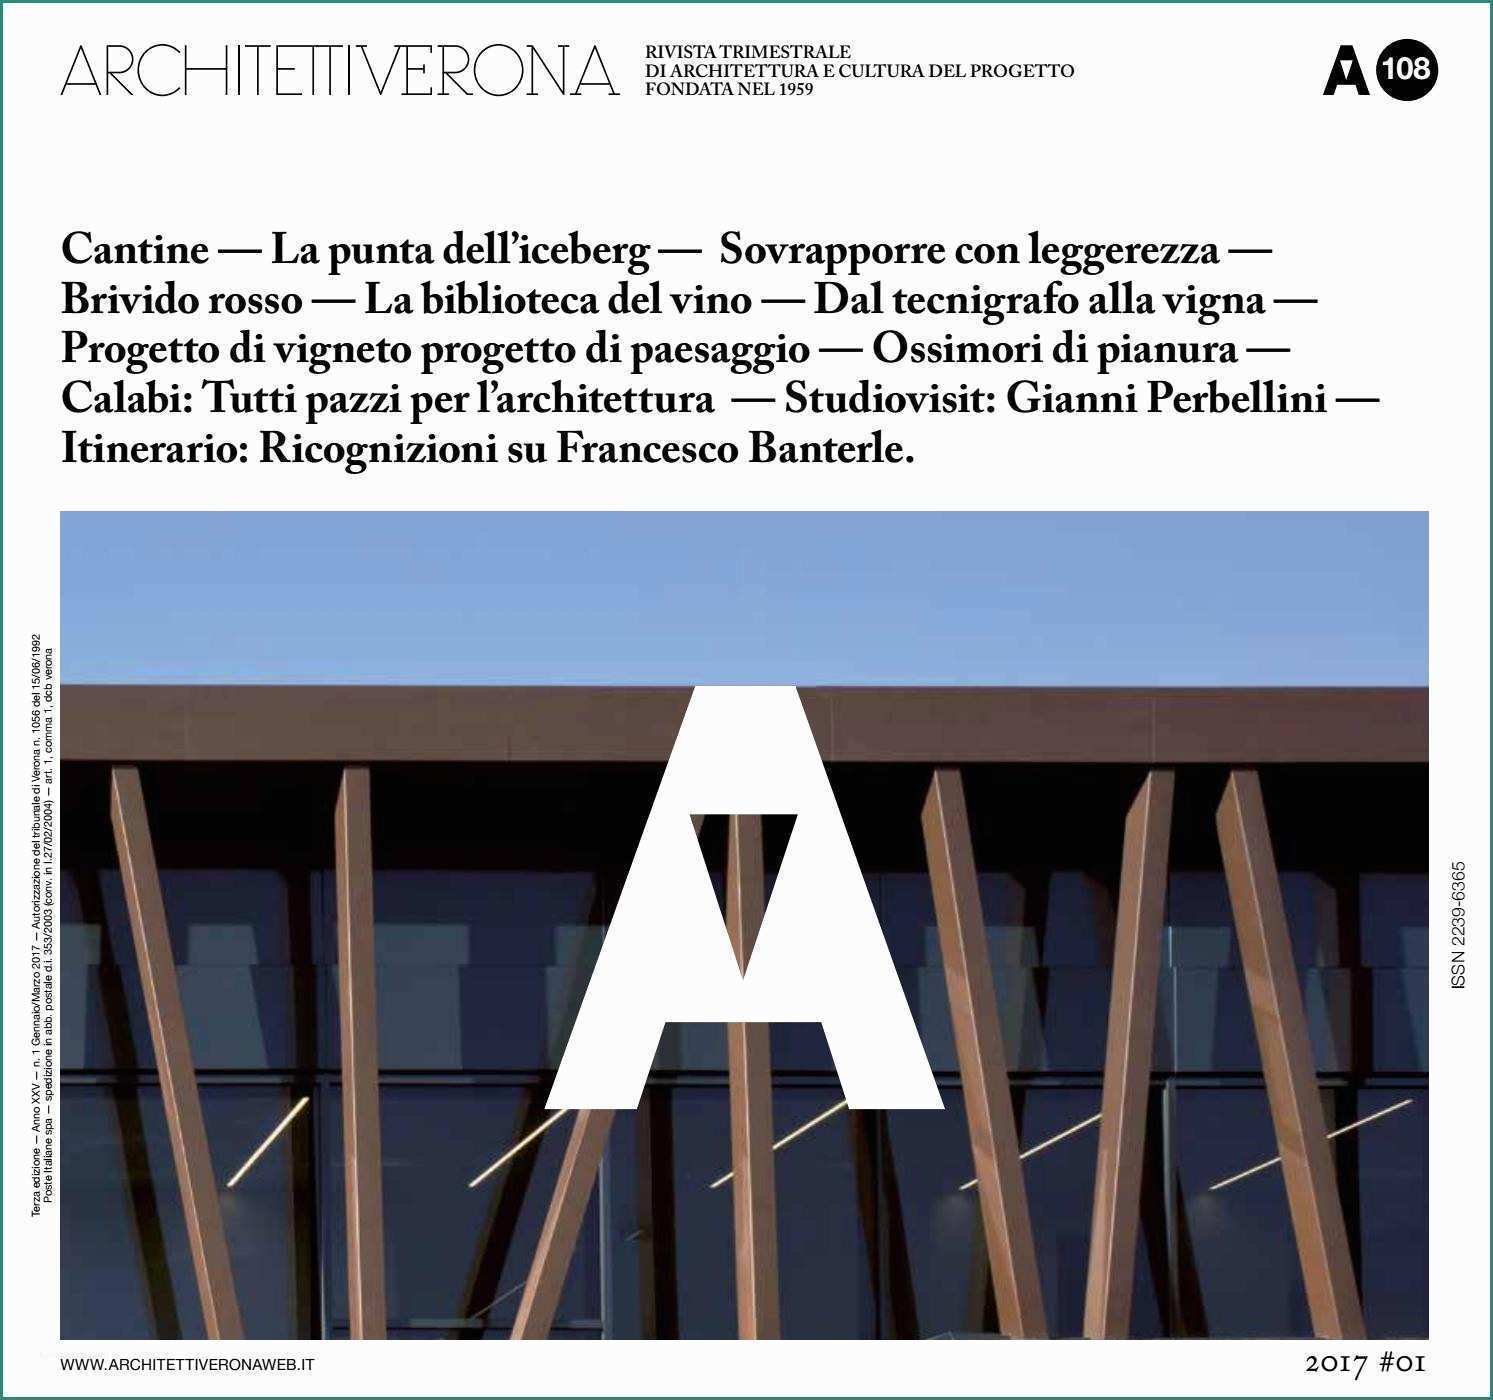 Cesto In Ferro Per Montacarichi E Architettiverona 108 by Architettiverona issuu